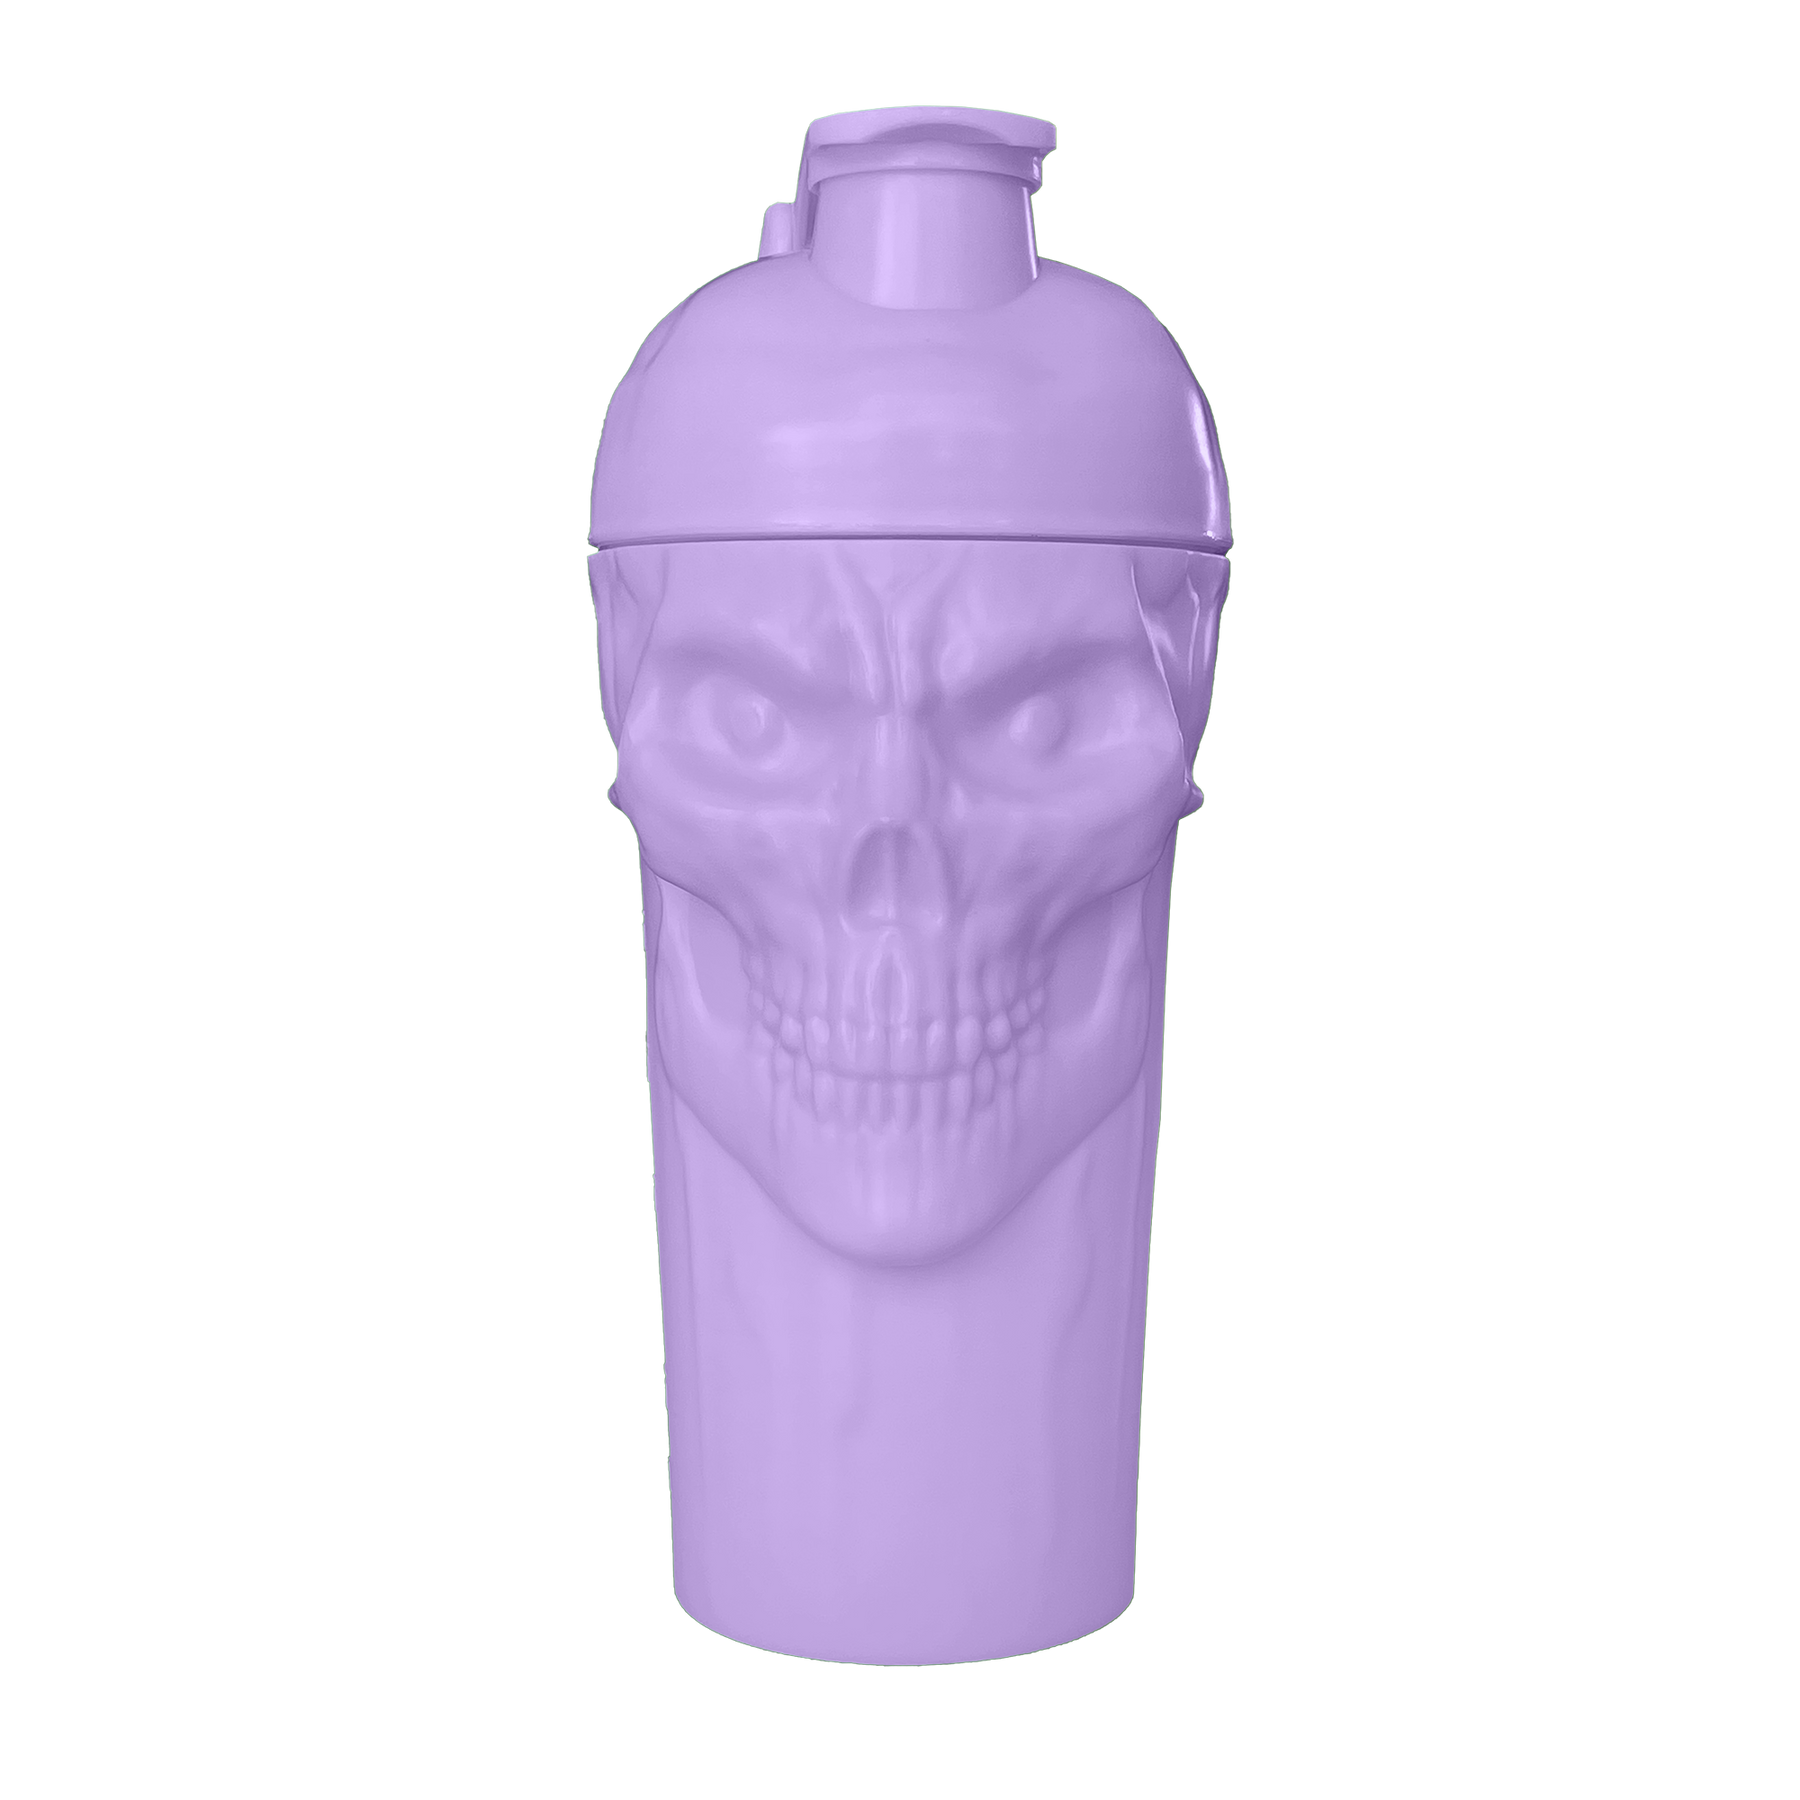 The Curse! Skull Shaker